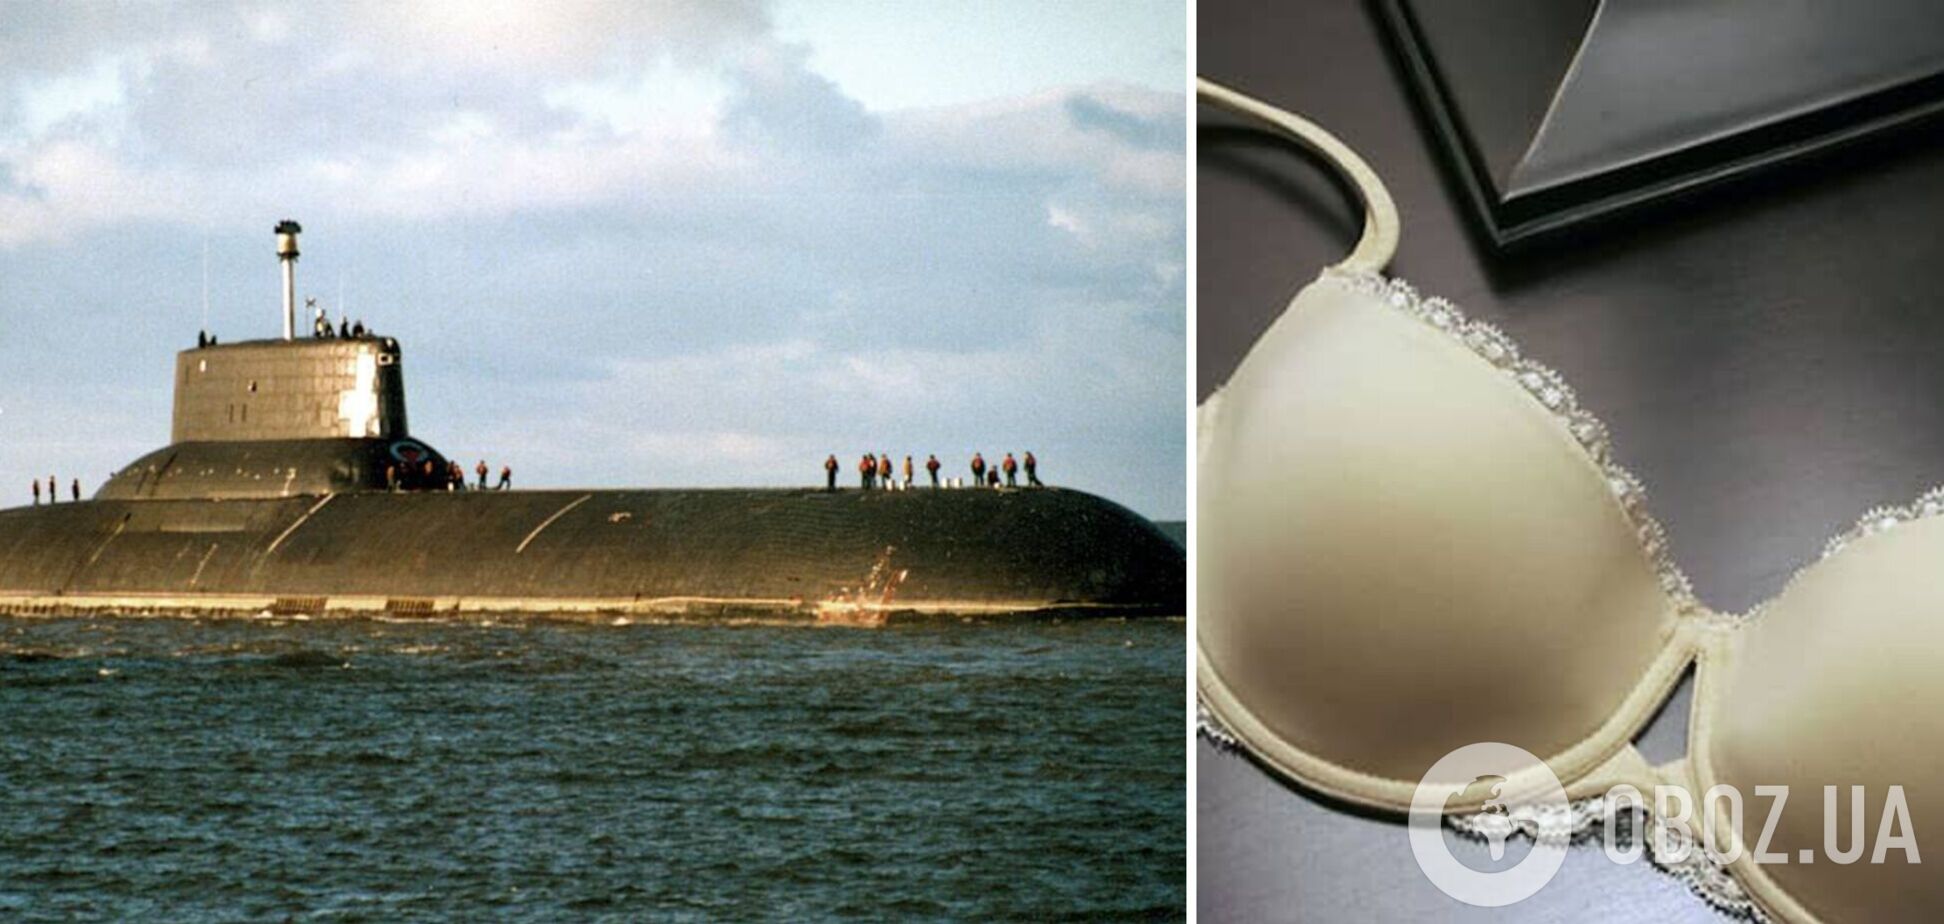 В сети высмеяли капитана атомной подводной лодки РФ за 'бретельку от бюстгальтера' на голове. Фото